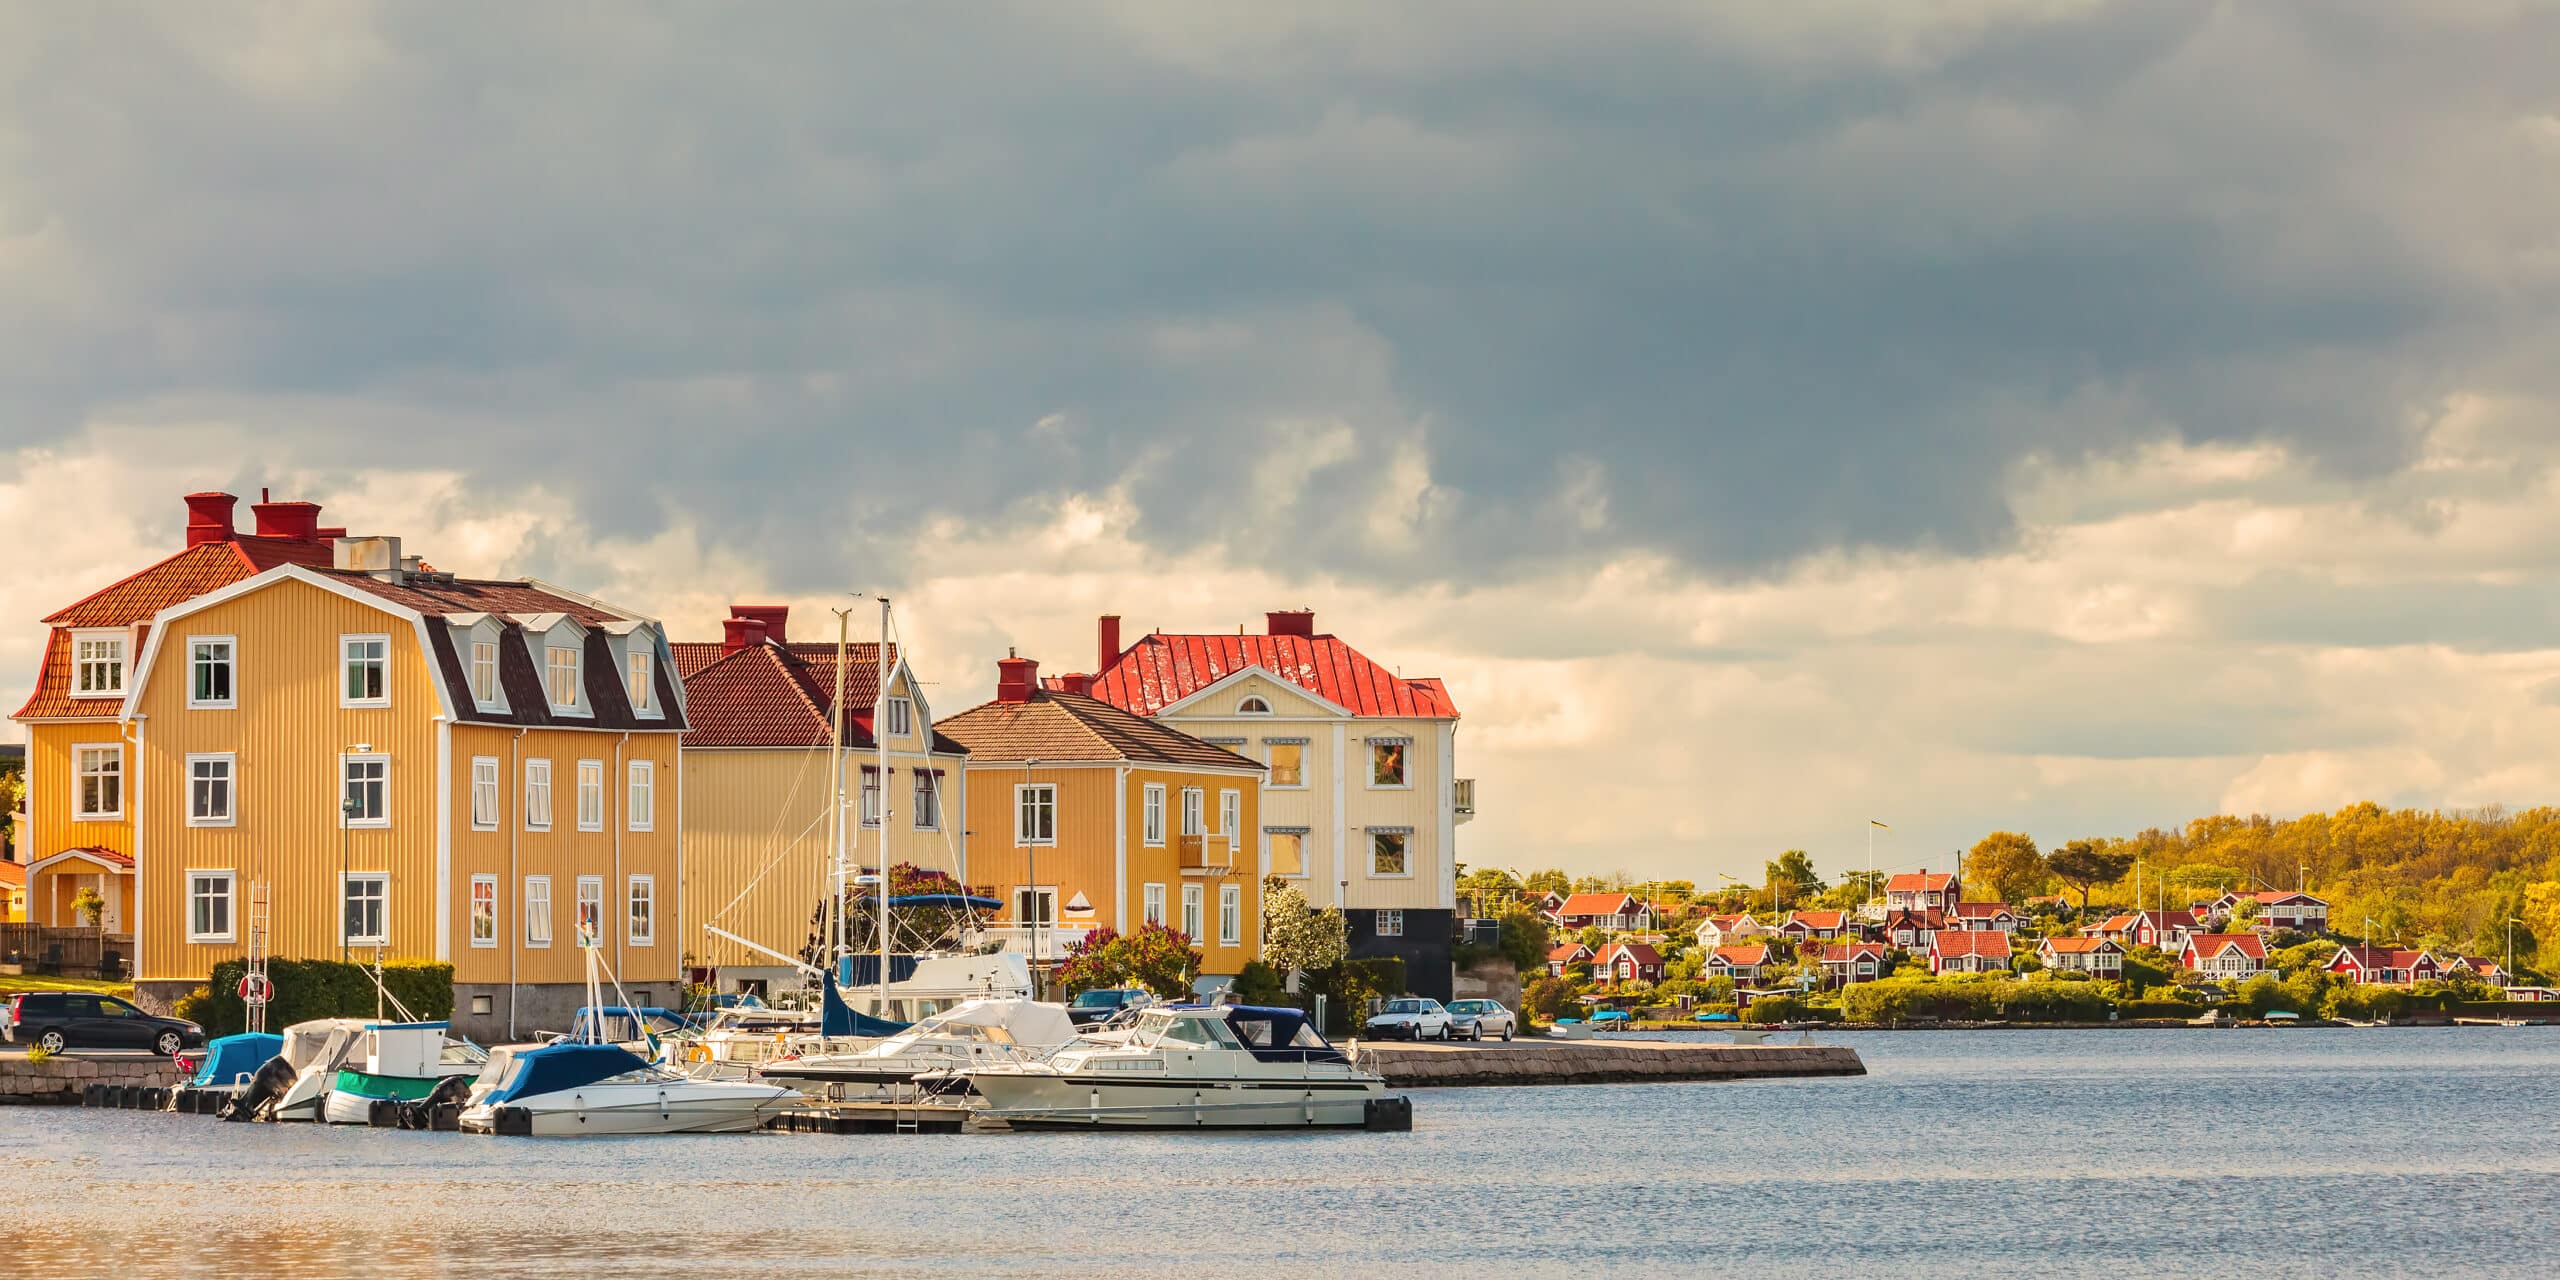 Karlskronan yritysportaali - alku helpommin saatavilla olevalle kunnalliselle palvelulle.